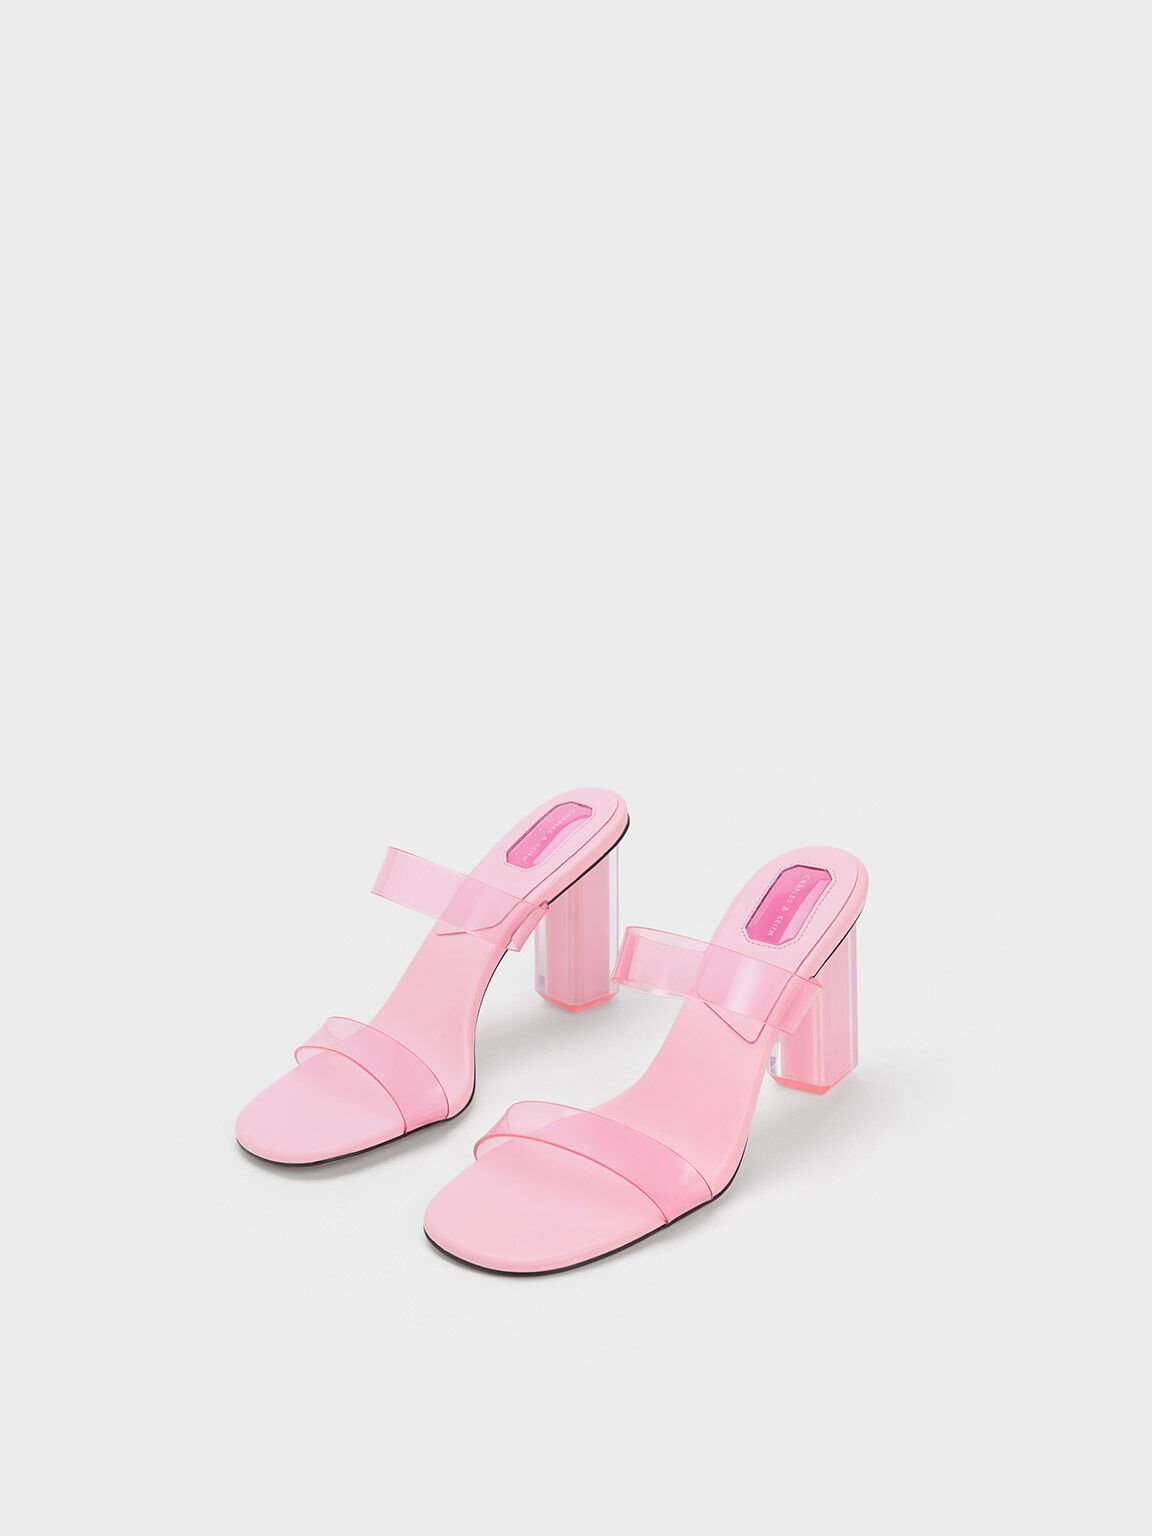 Fia 果凍雙帶高跟拖鞋, 淺粉色, hi-res